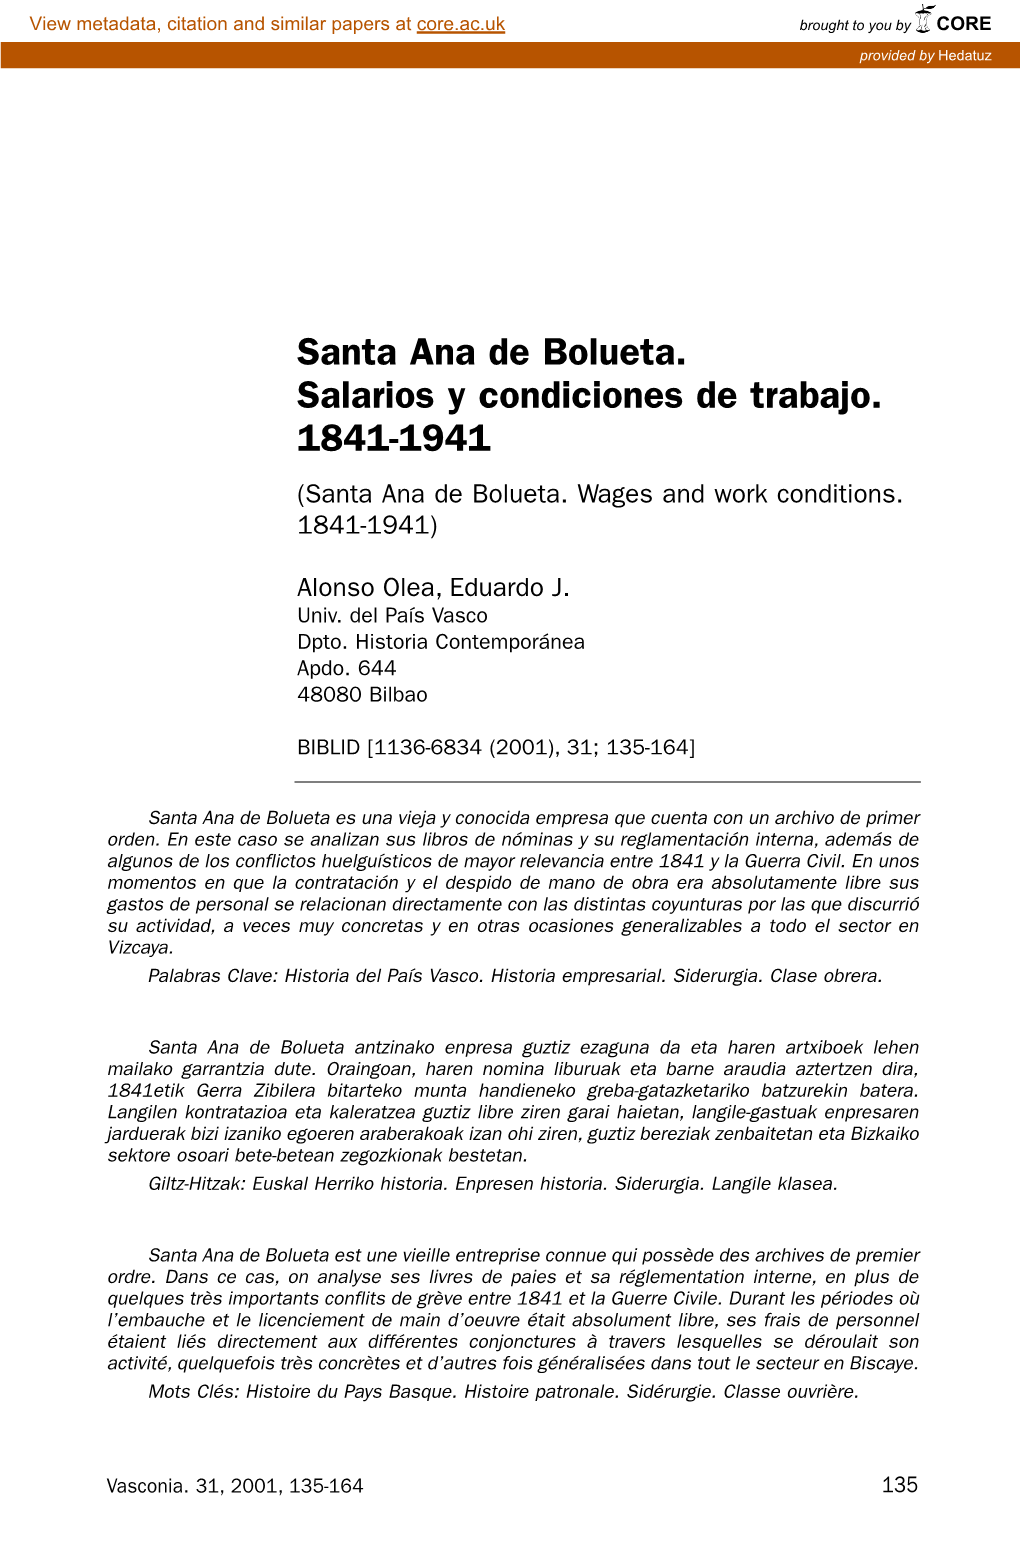 Santa Ana De Bolueta. Salarios Y Condiciones De Trabajo. 1841-1941 (Santa Ana De Bolueta